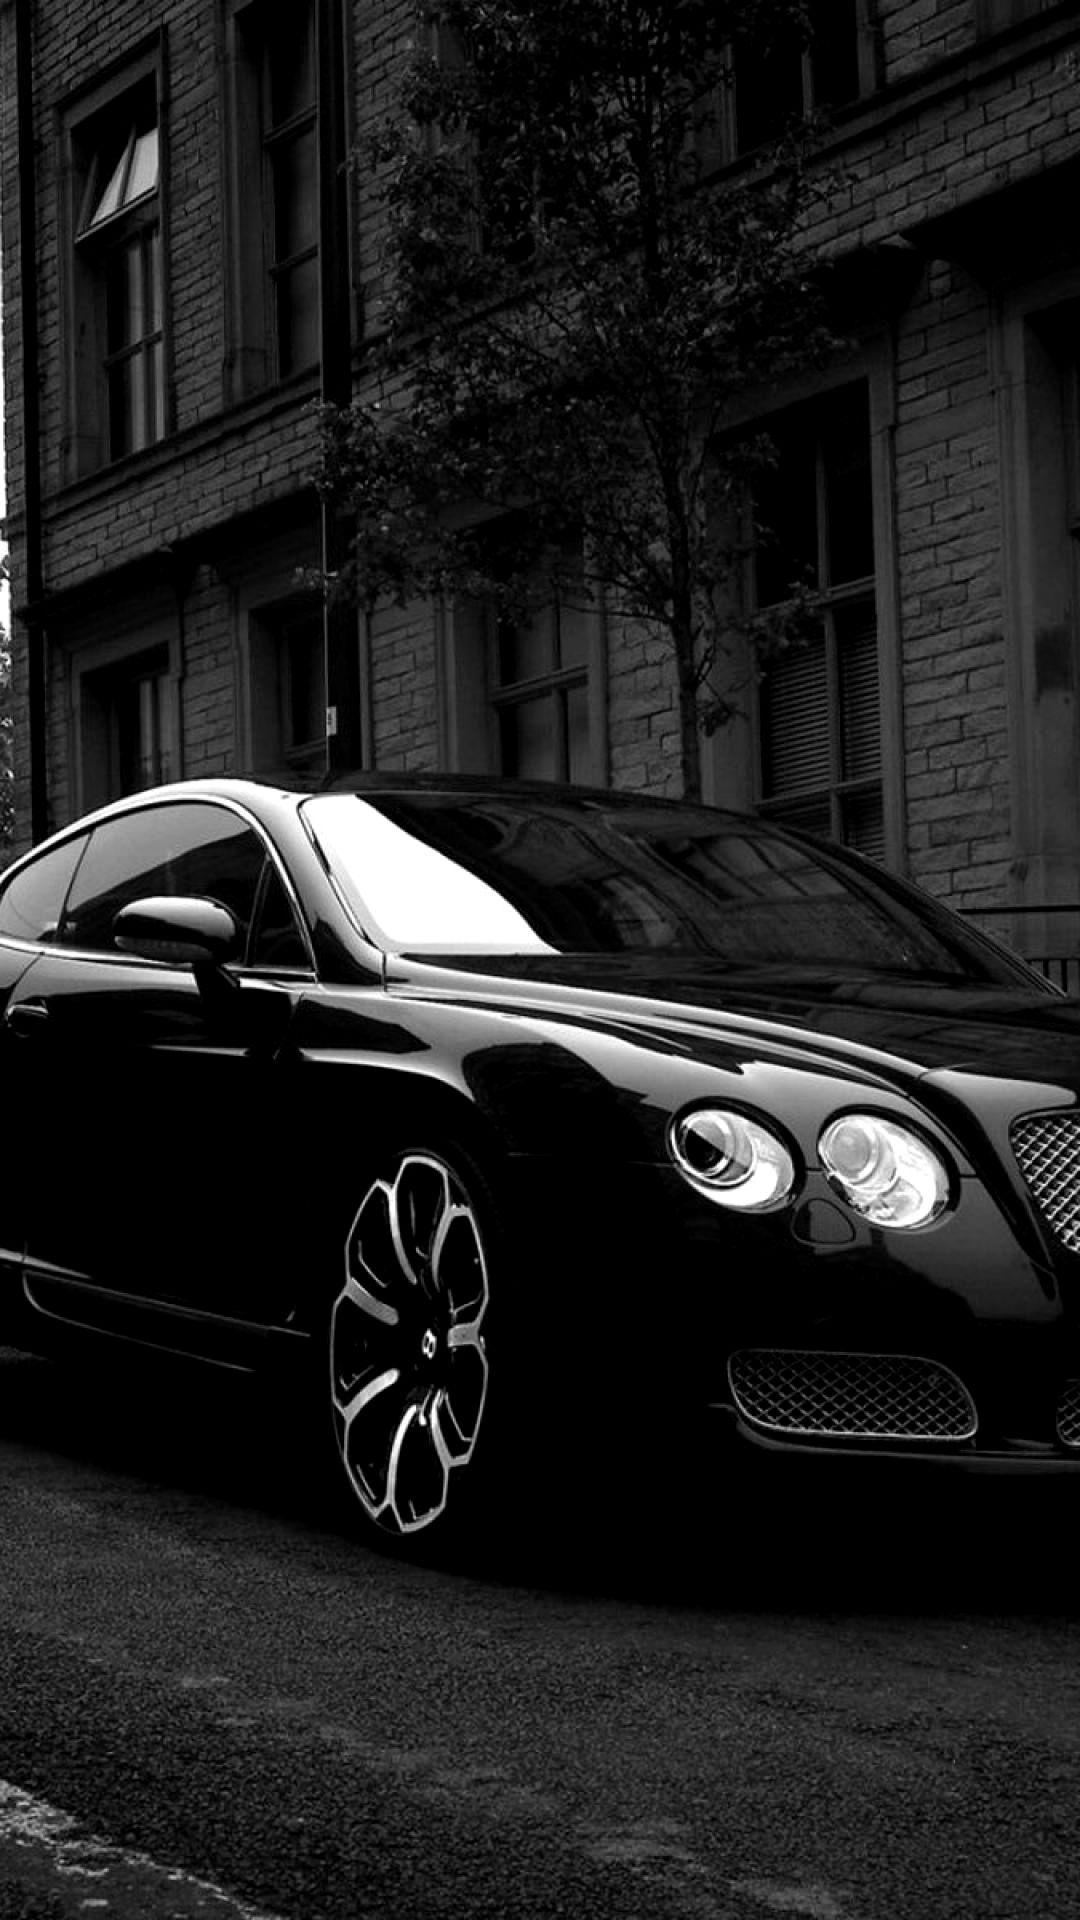 Black Bentley Wallpapers Top Free Black Bentley Backgrounds Wallpaperaccess